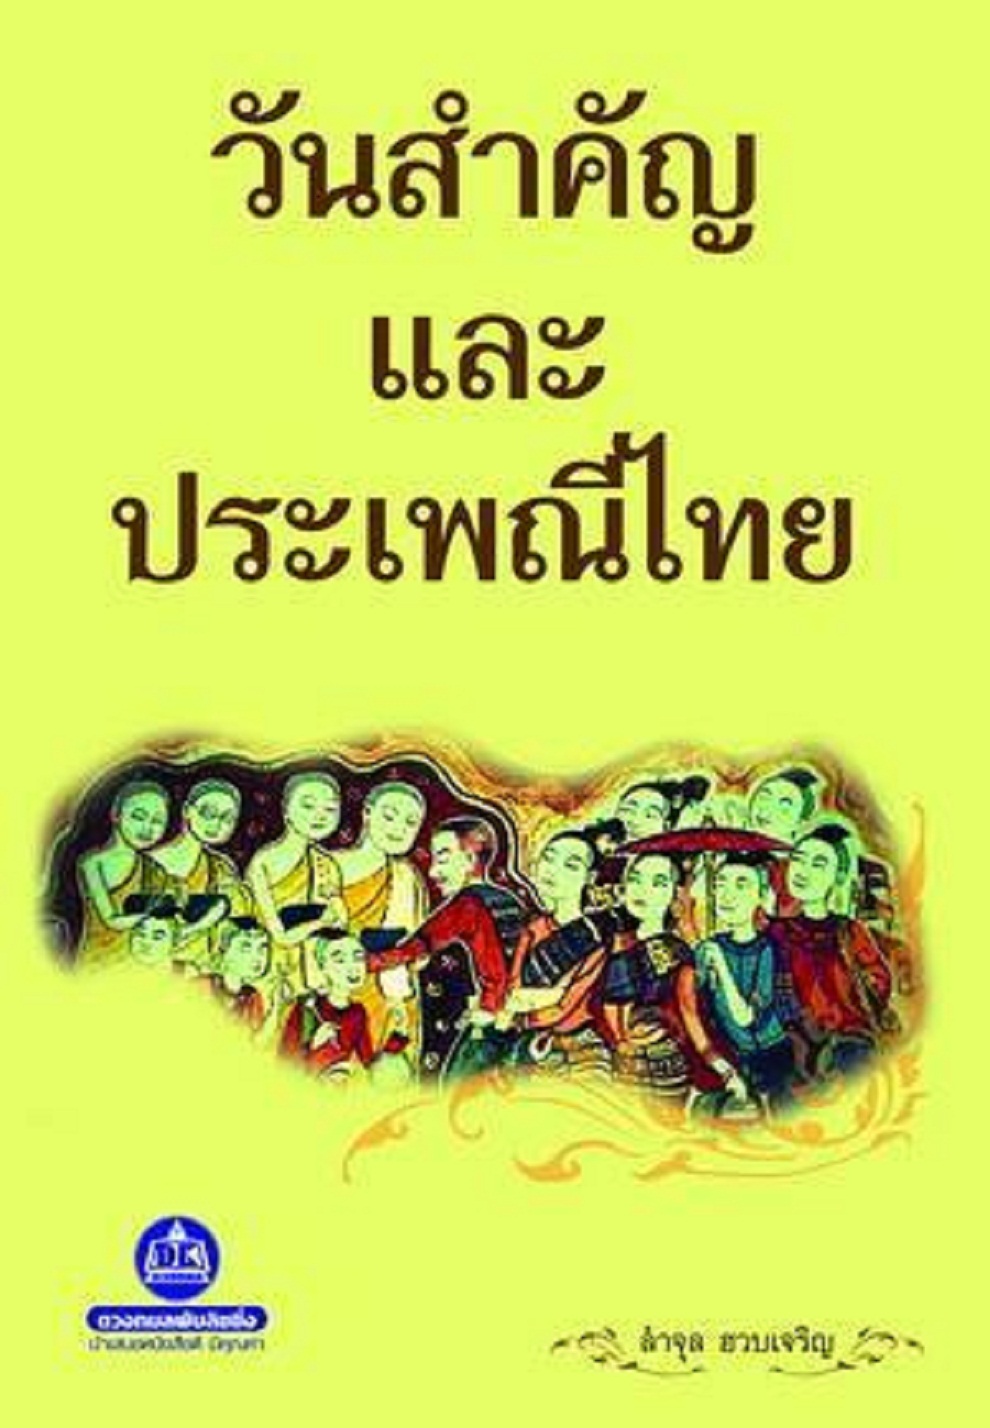 หนังสือ วันสำคัญและประเพณีไทย คนไทยทุกคนควรรู้